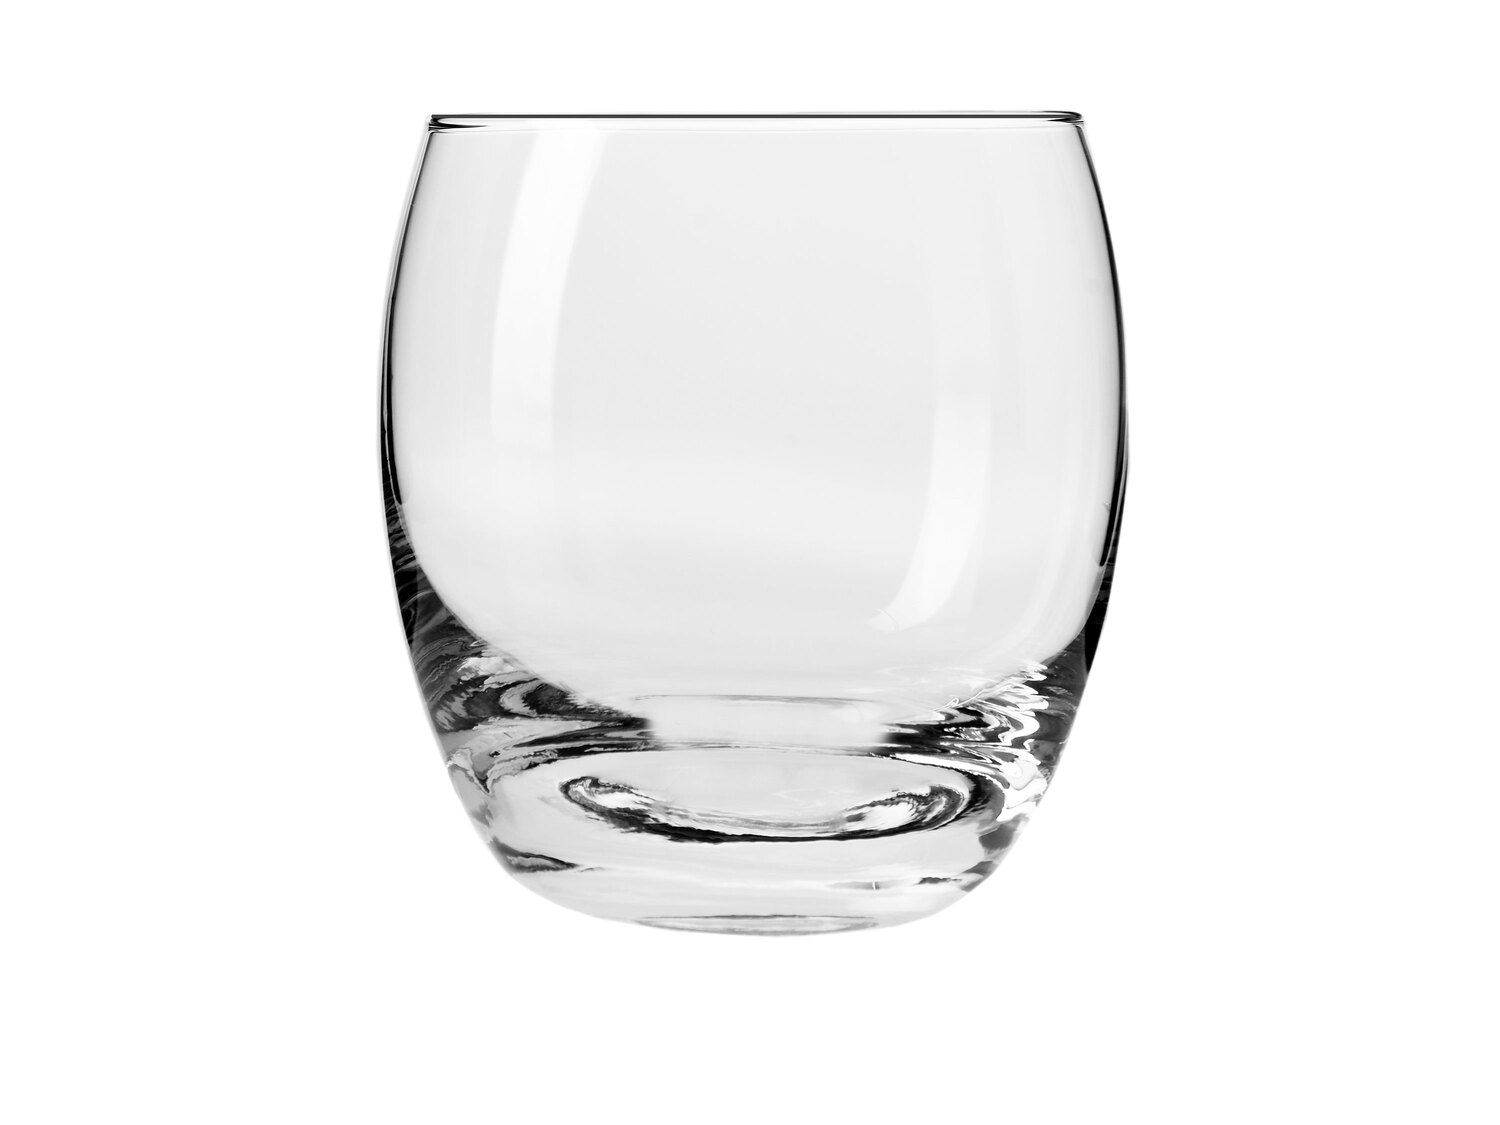 Zestaw 6 szklanek do deserów 300 ml , cena 24,99 PLN 
- wysokość: 95 mm
- szkło ...